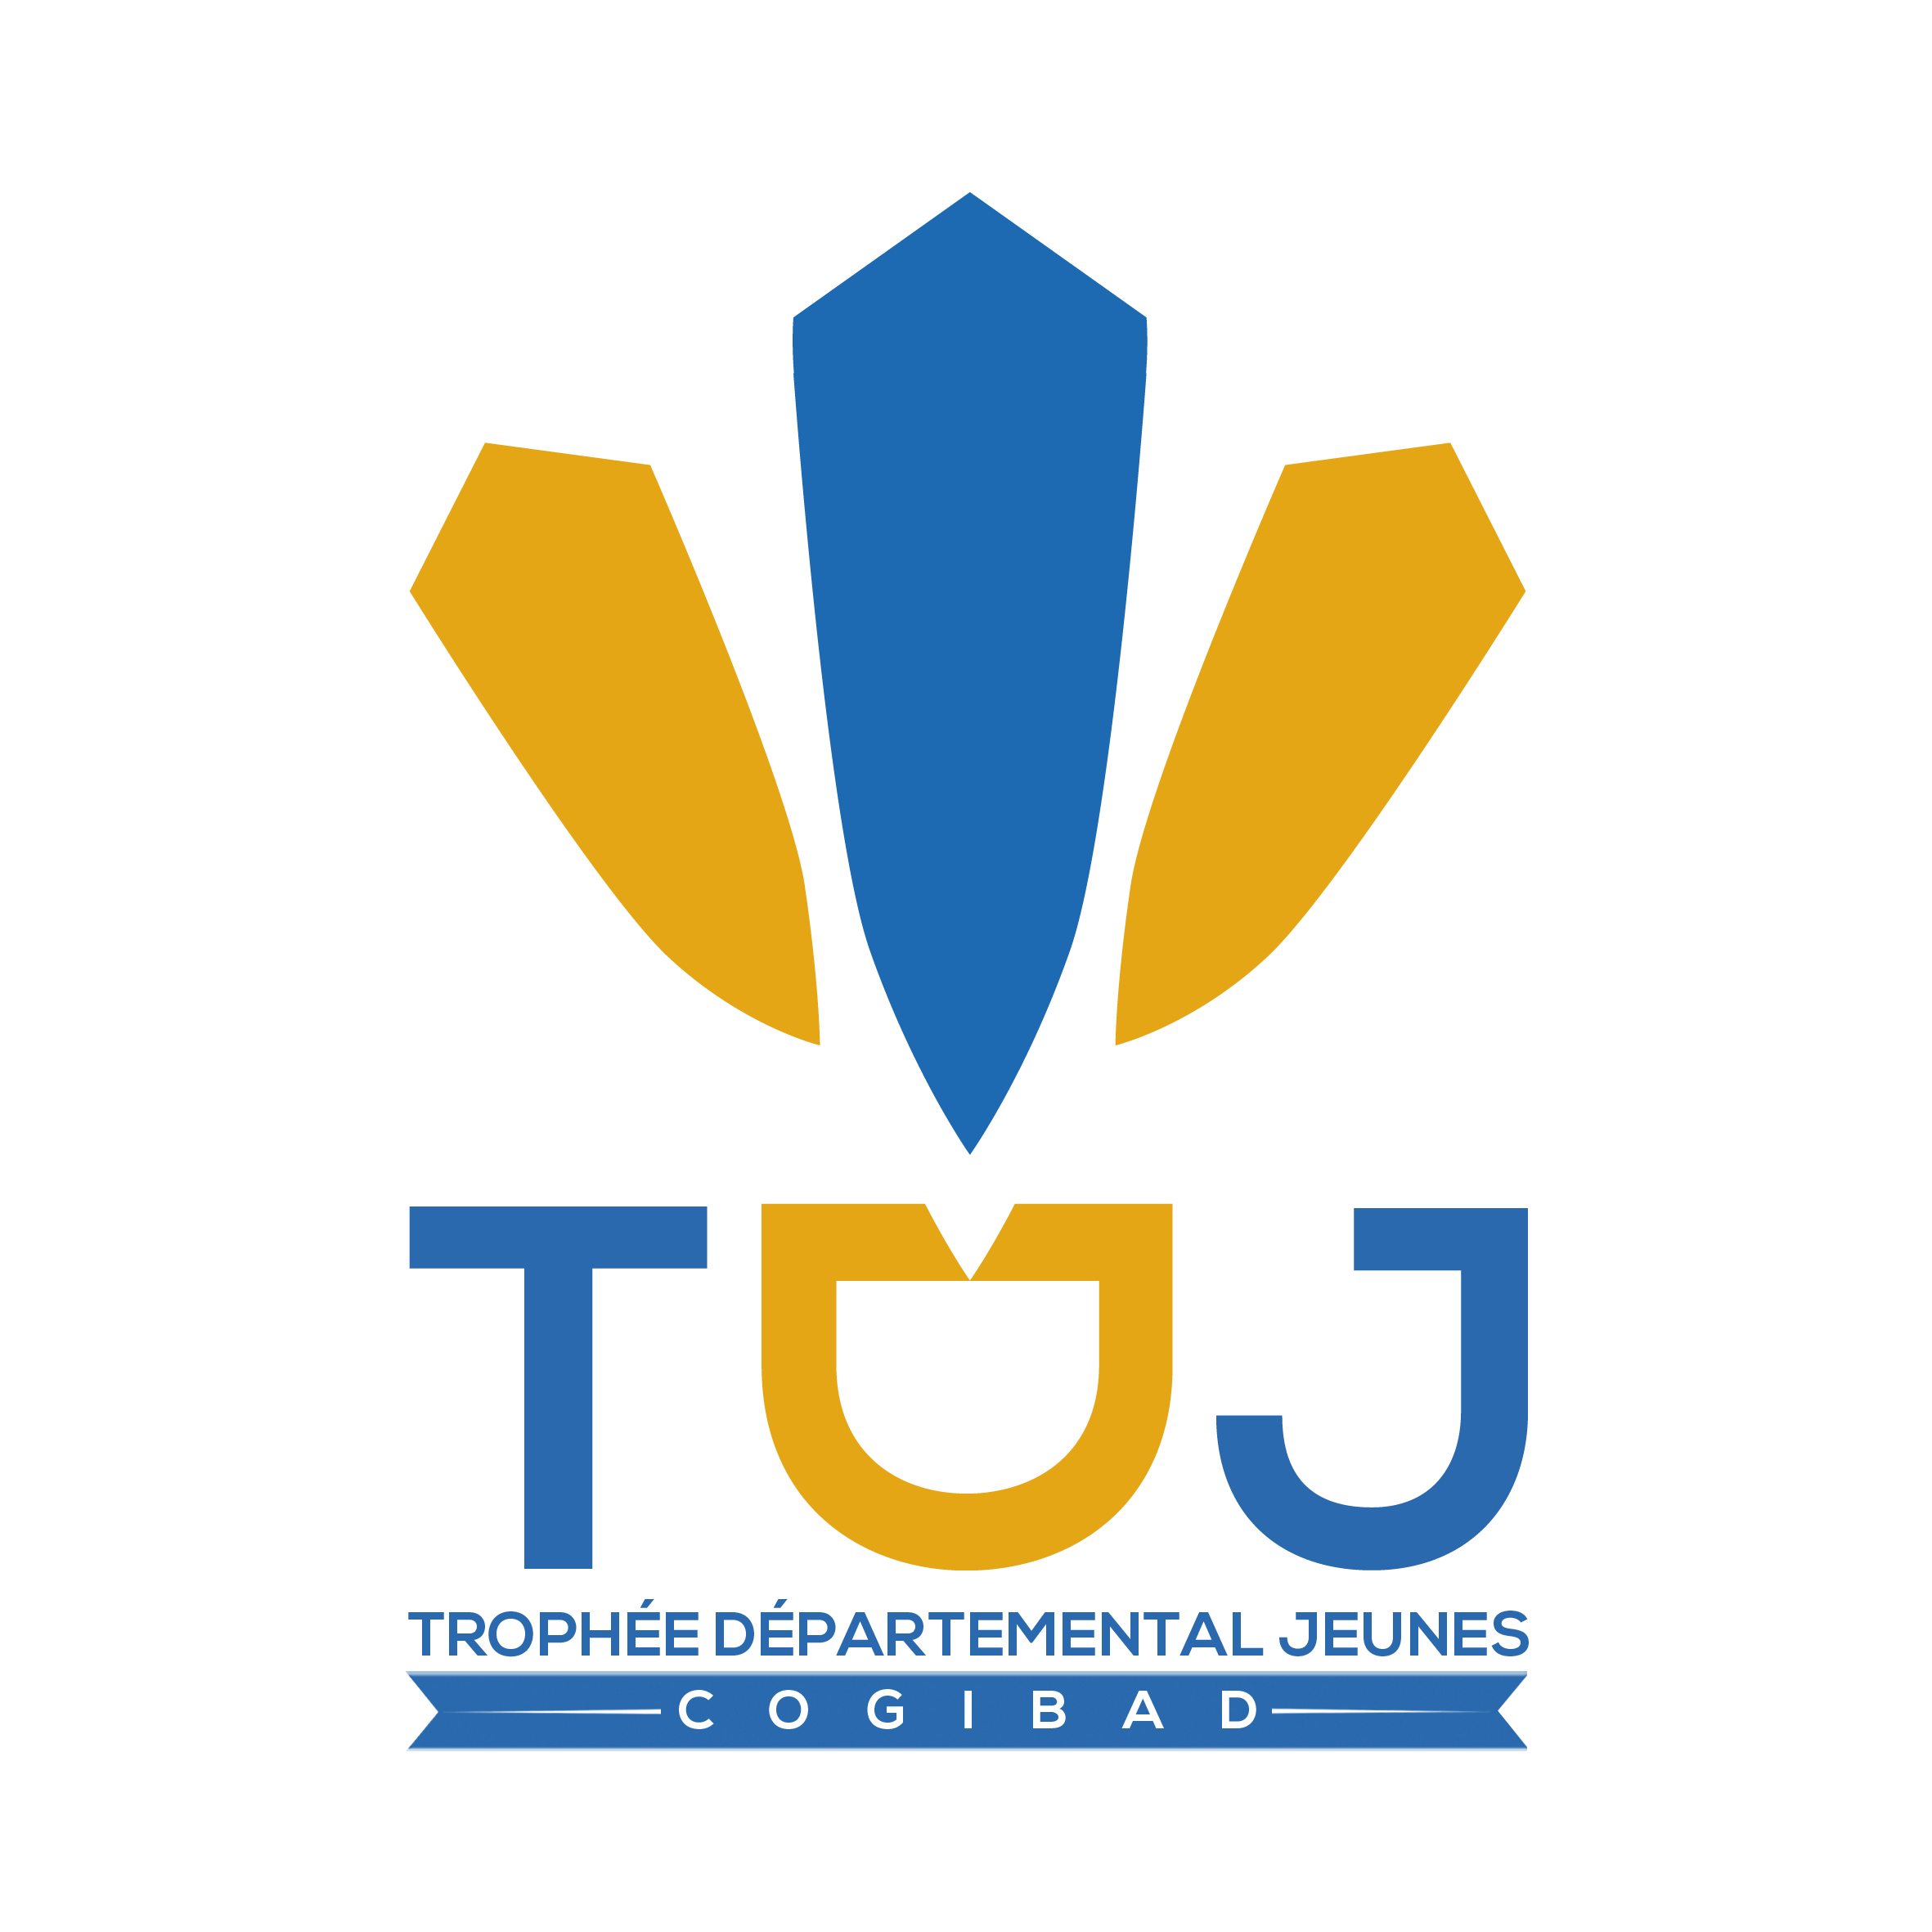 Logo TDJ